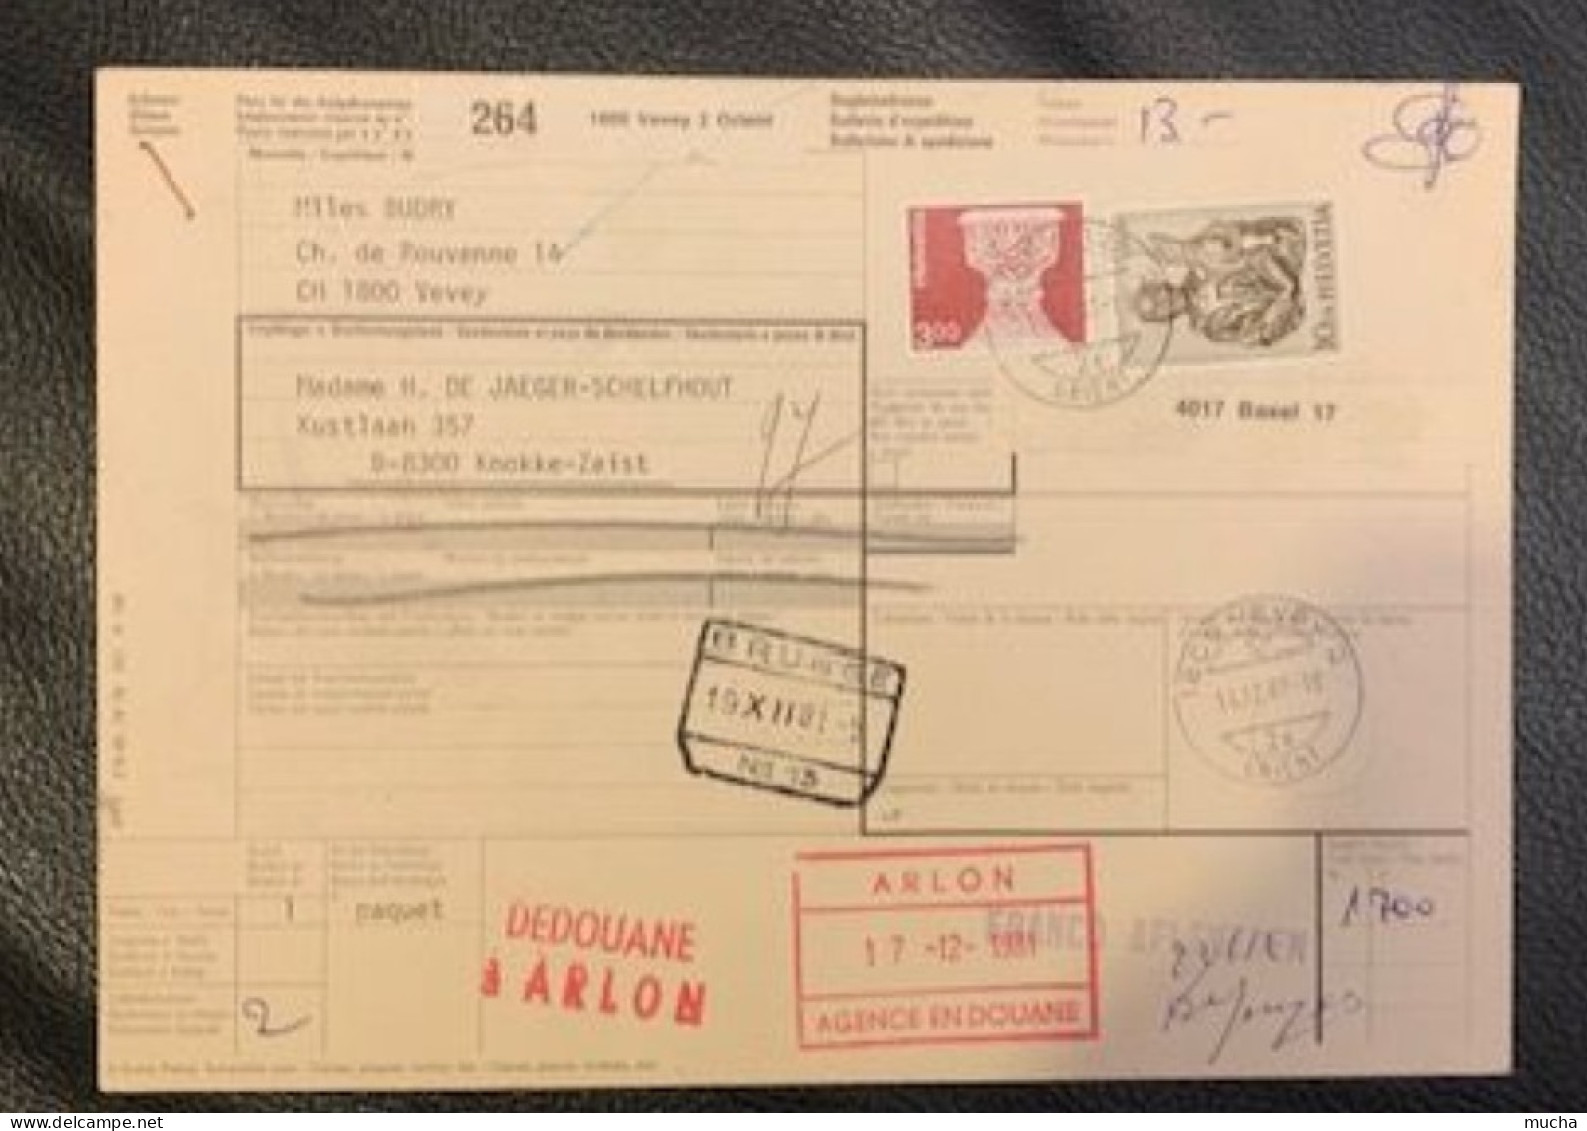 20409 - Bulletin D'expédition Vevey Orient  14.12.1981 Pour Knokke-Zeist Via Arlon & Brugge - Lettres & Documents